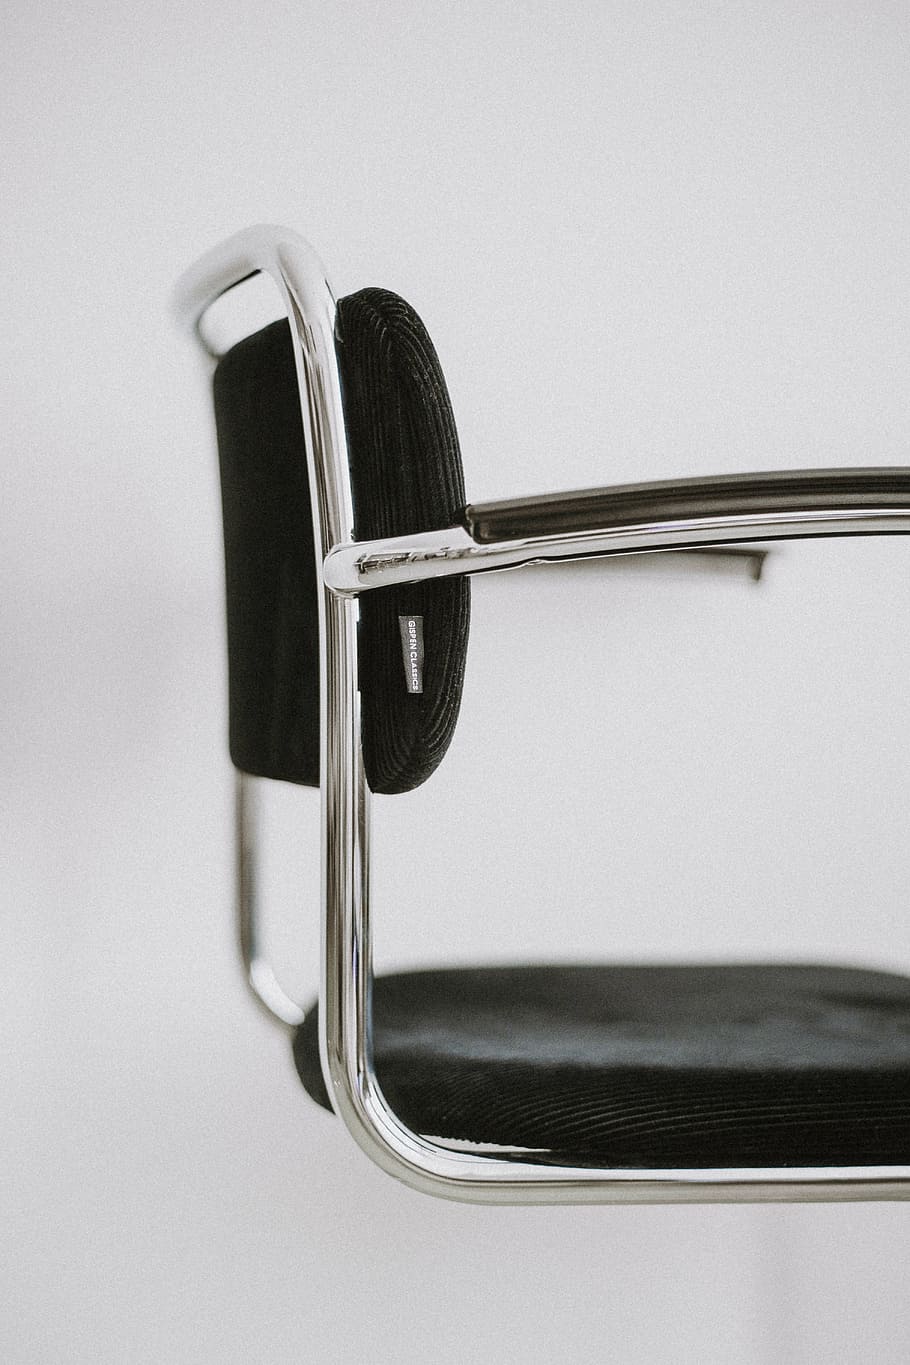 foto de close-up, cinza, preto, cadeira de almofada, cadeira, branco, aço, parede, preto e branco, prateado